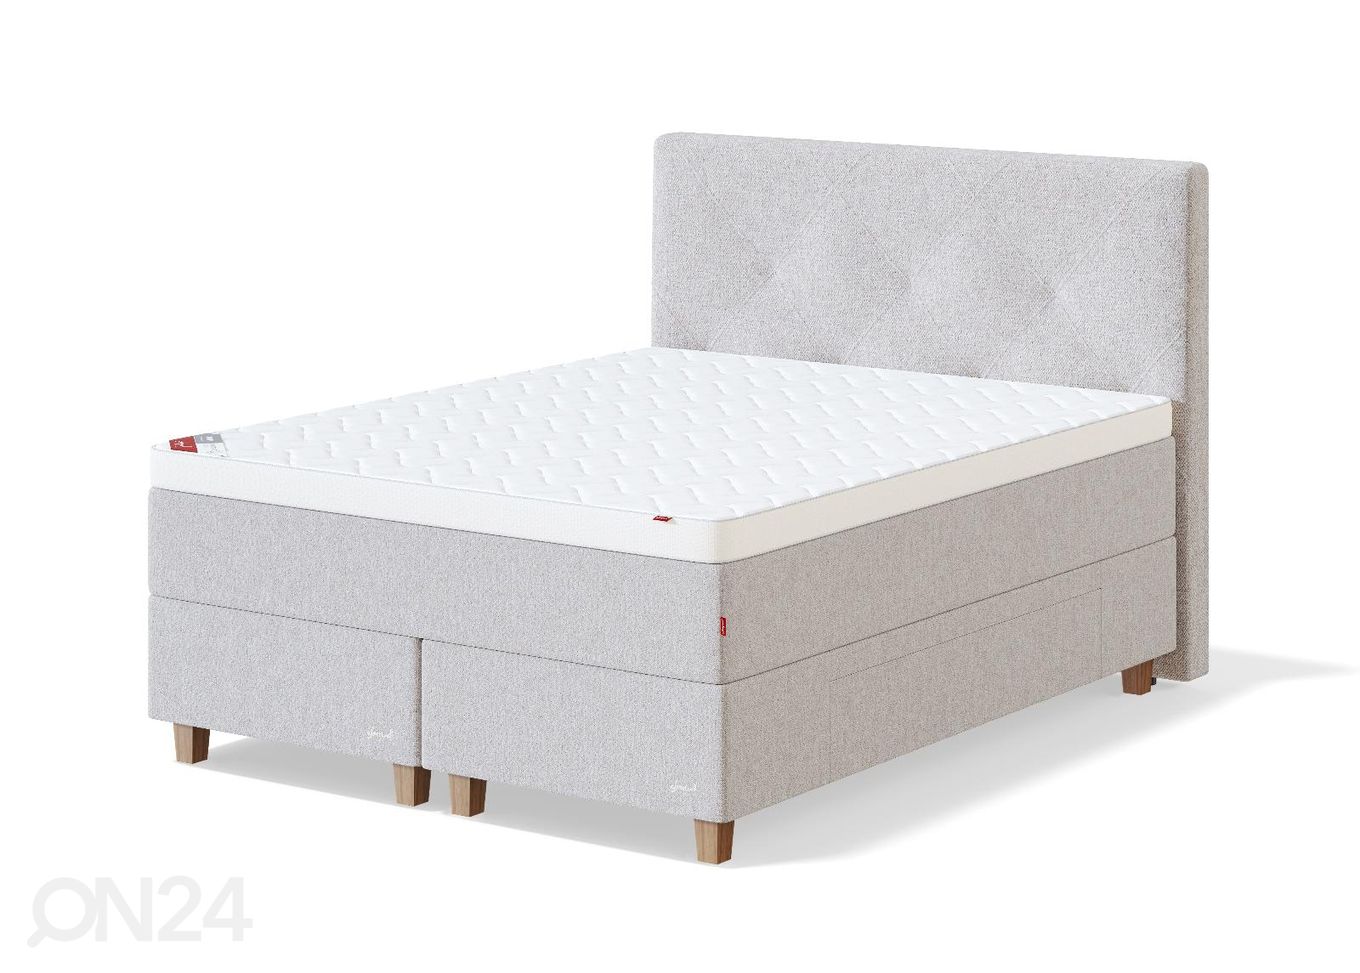 Sleepwell континентальная кровать с ящиками BLACK CONTINENTAL 160x200 cm увеличить